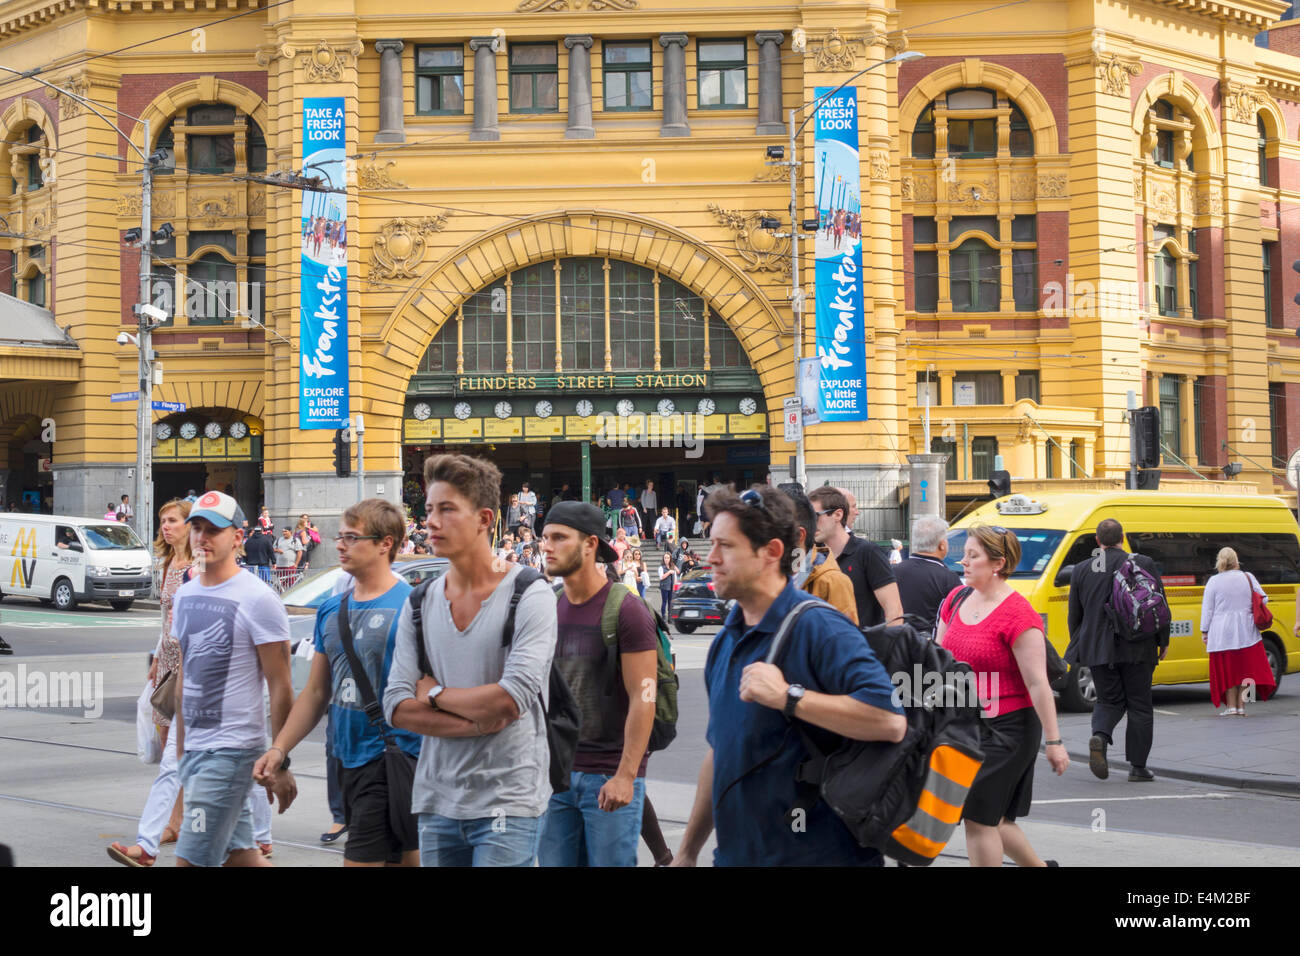 Melbourne Australien, Flinders Street Station, Metro Trains Rail Network, Zug, Kreuzung überqueren, Mann Männer männlich, Frau weibliche Frauen, vorne, Eingang, gebaut Stockfoto